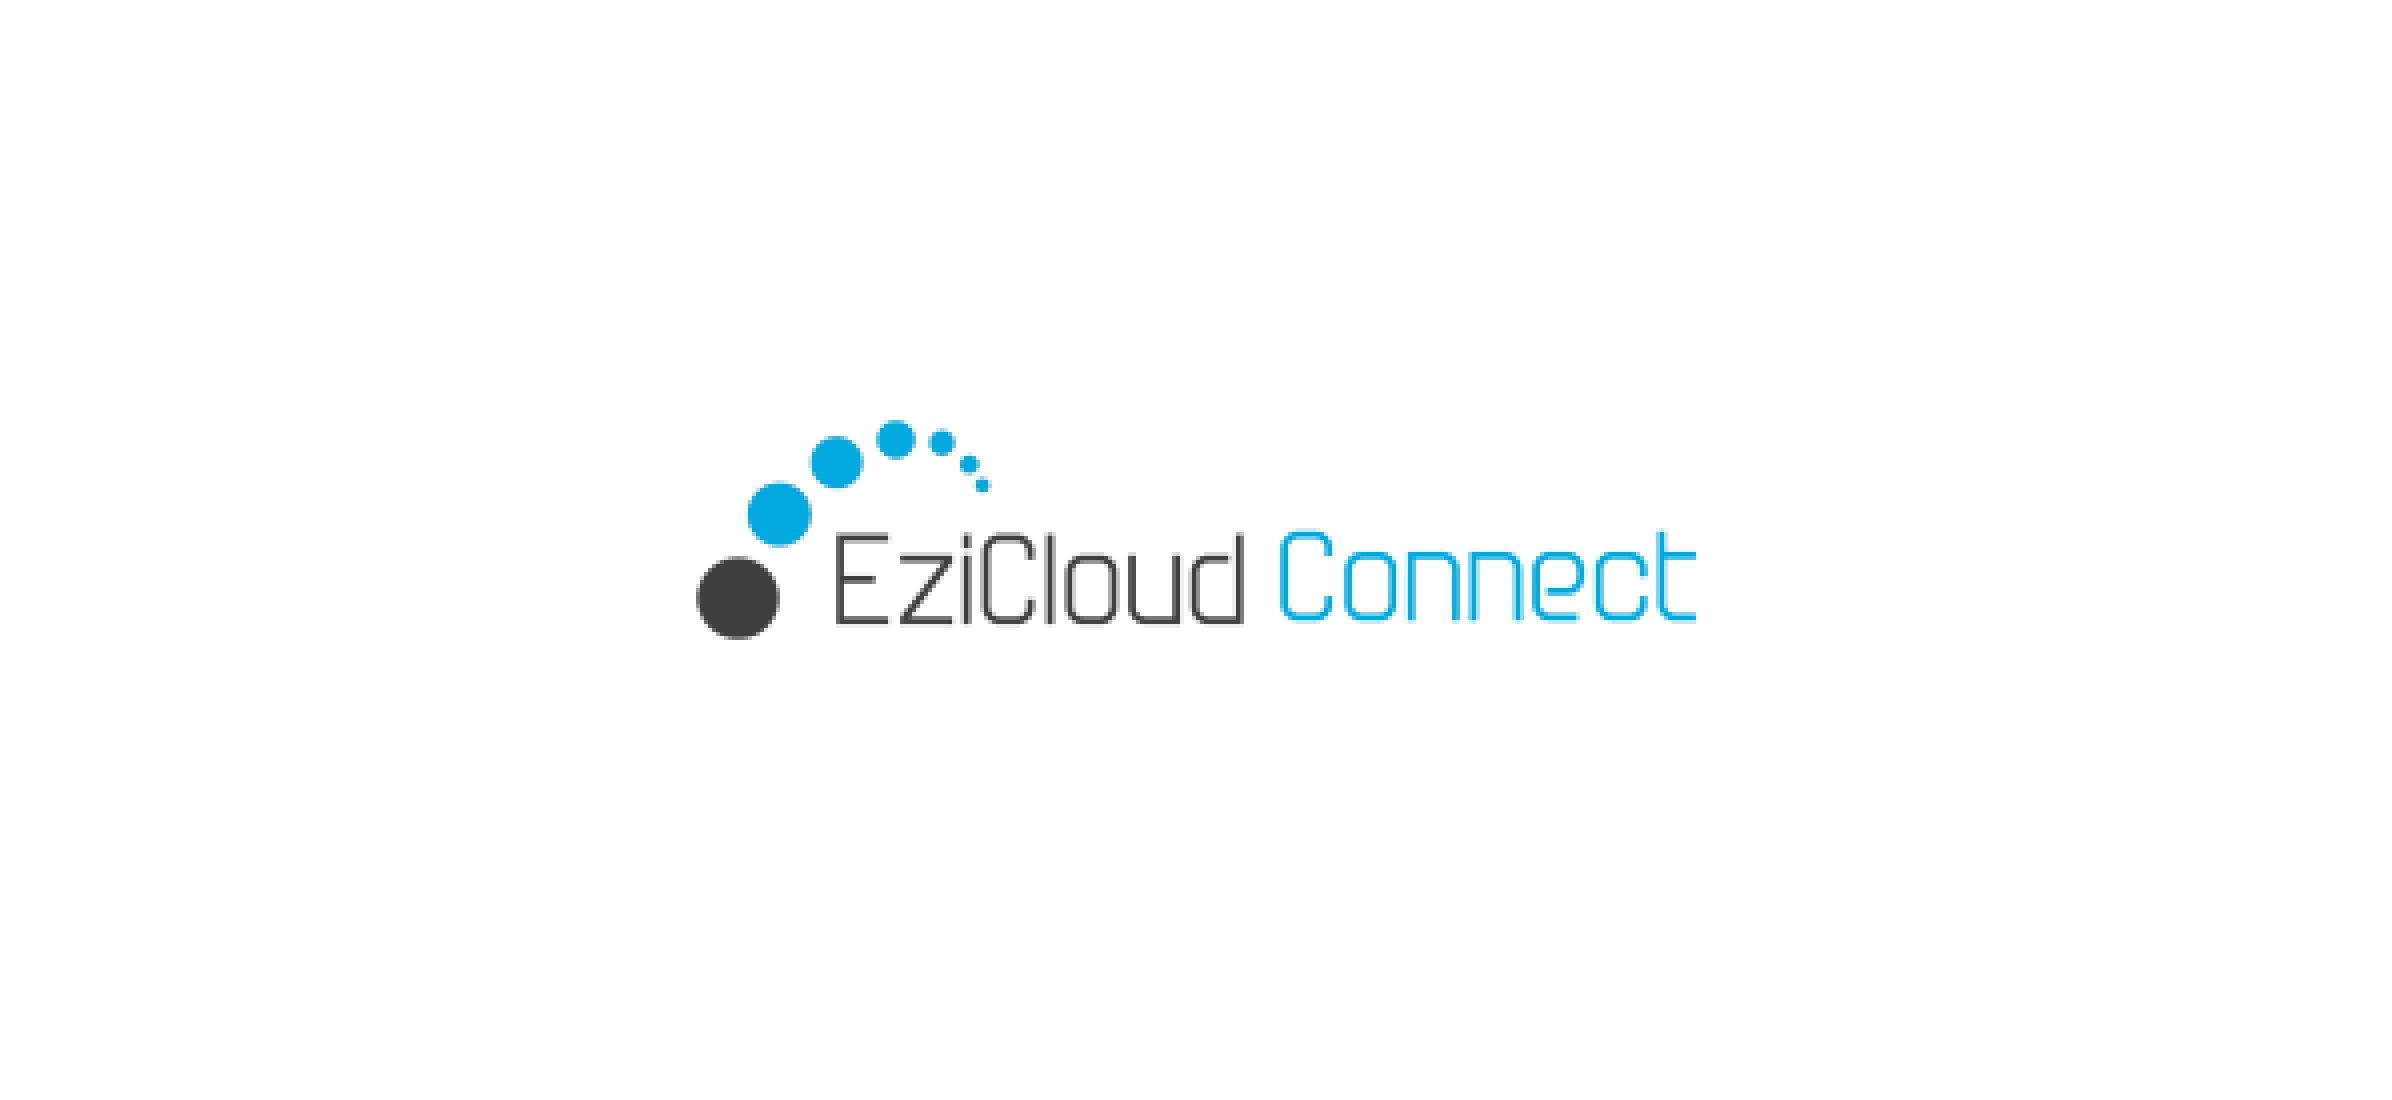 The EziCloud Connect logo